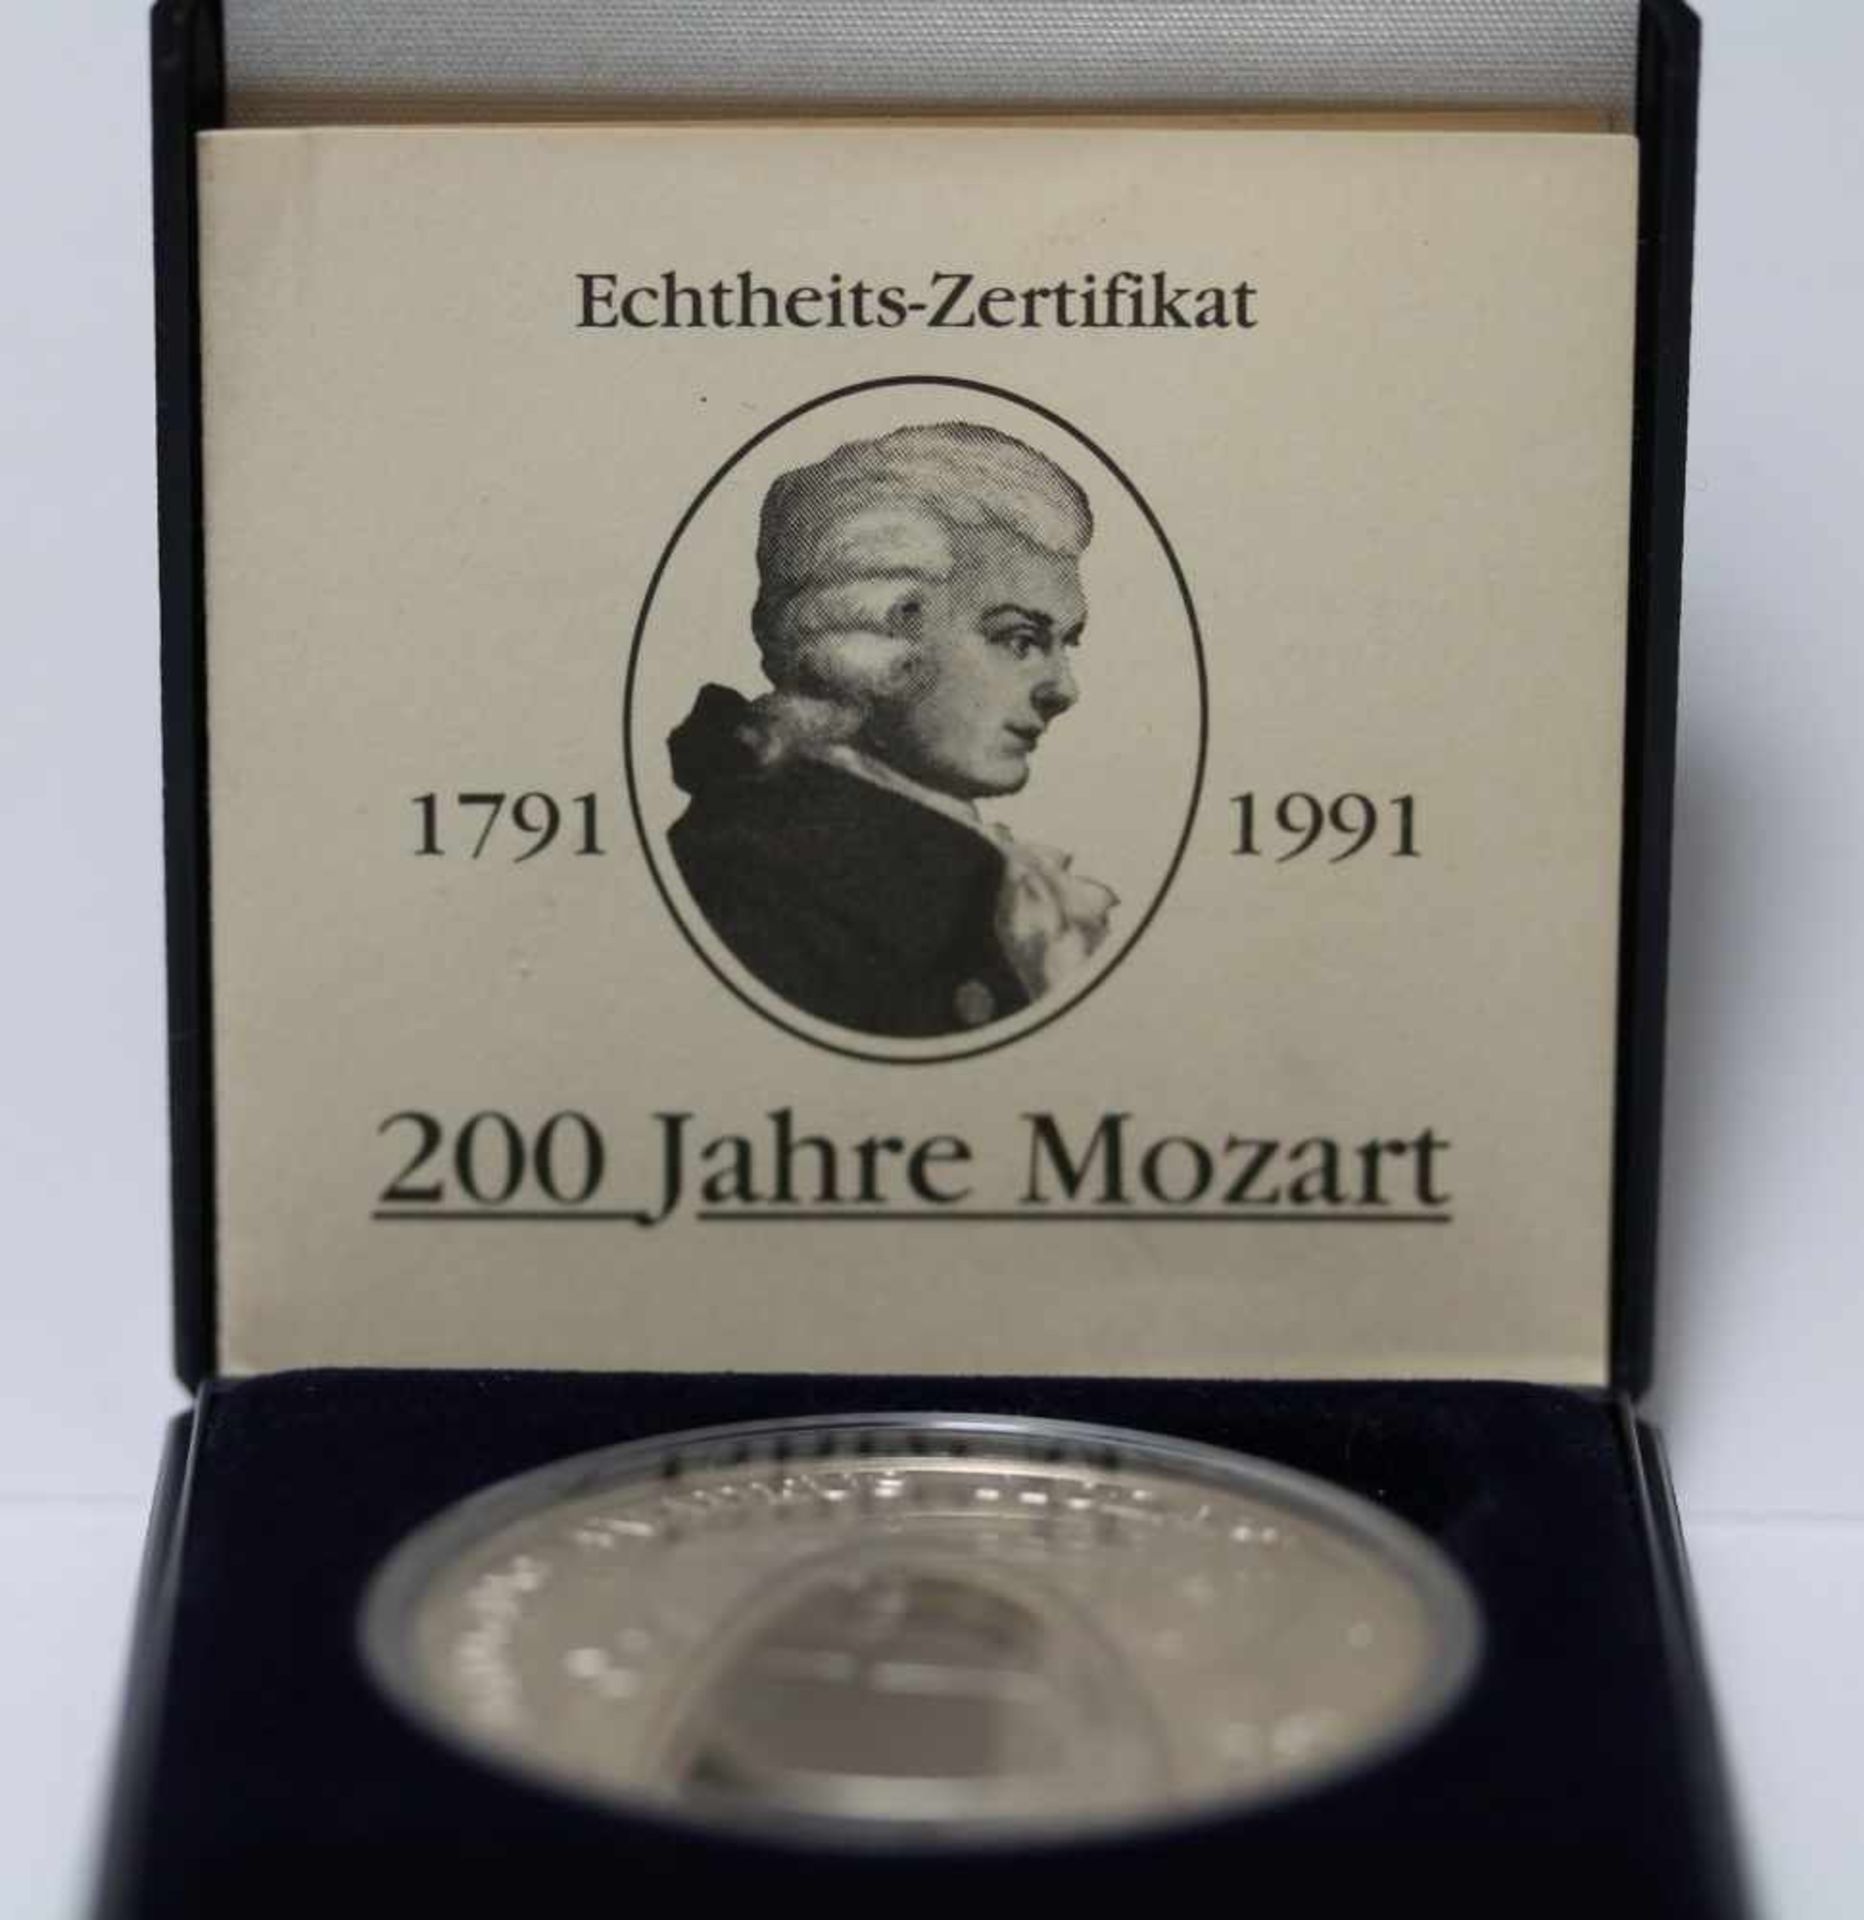 200 Jahre Mozart, MDM, Kupfer/Nickel, PP, Ausgabejahr 1991 - Bild 3 aus 3